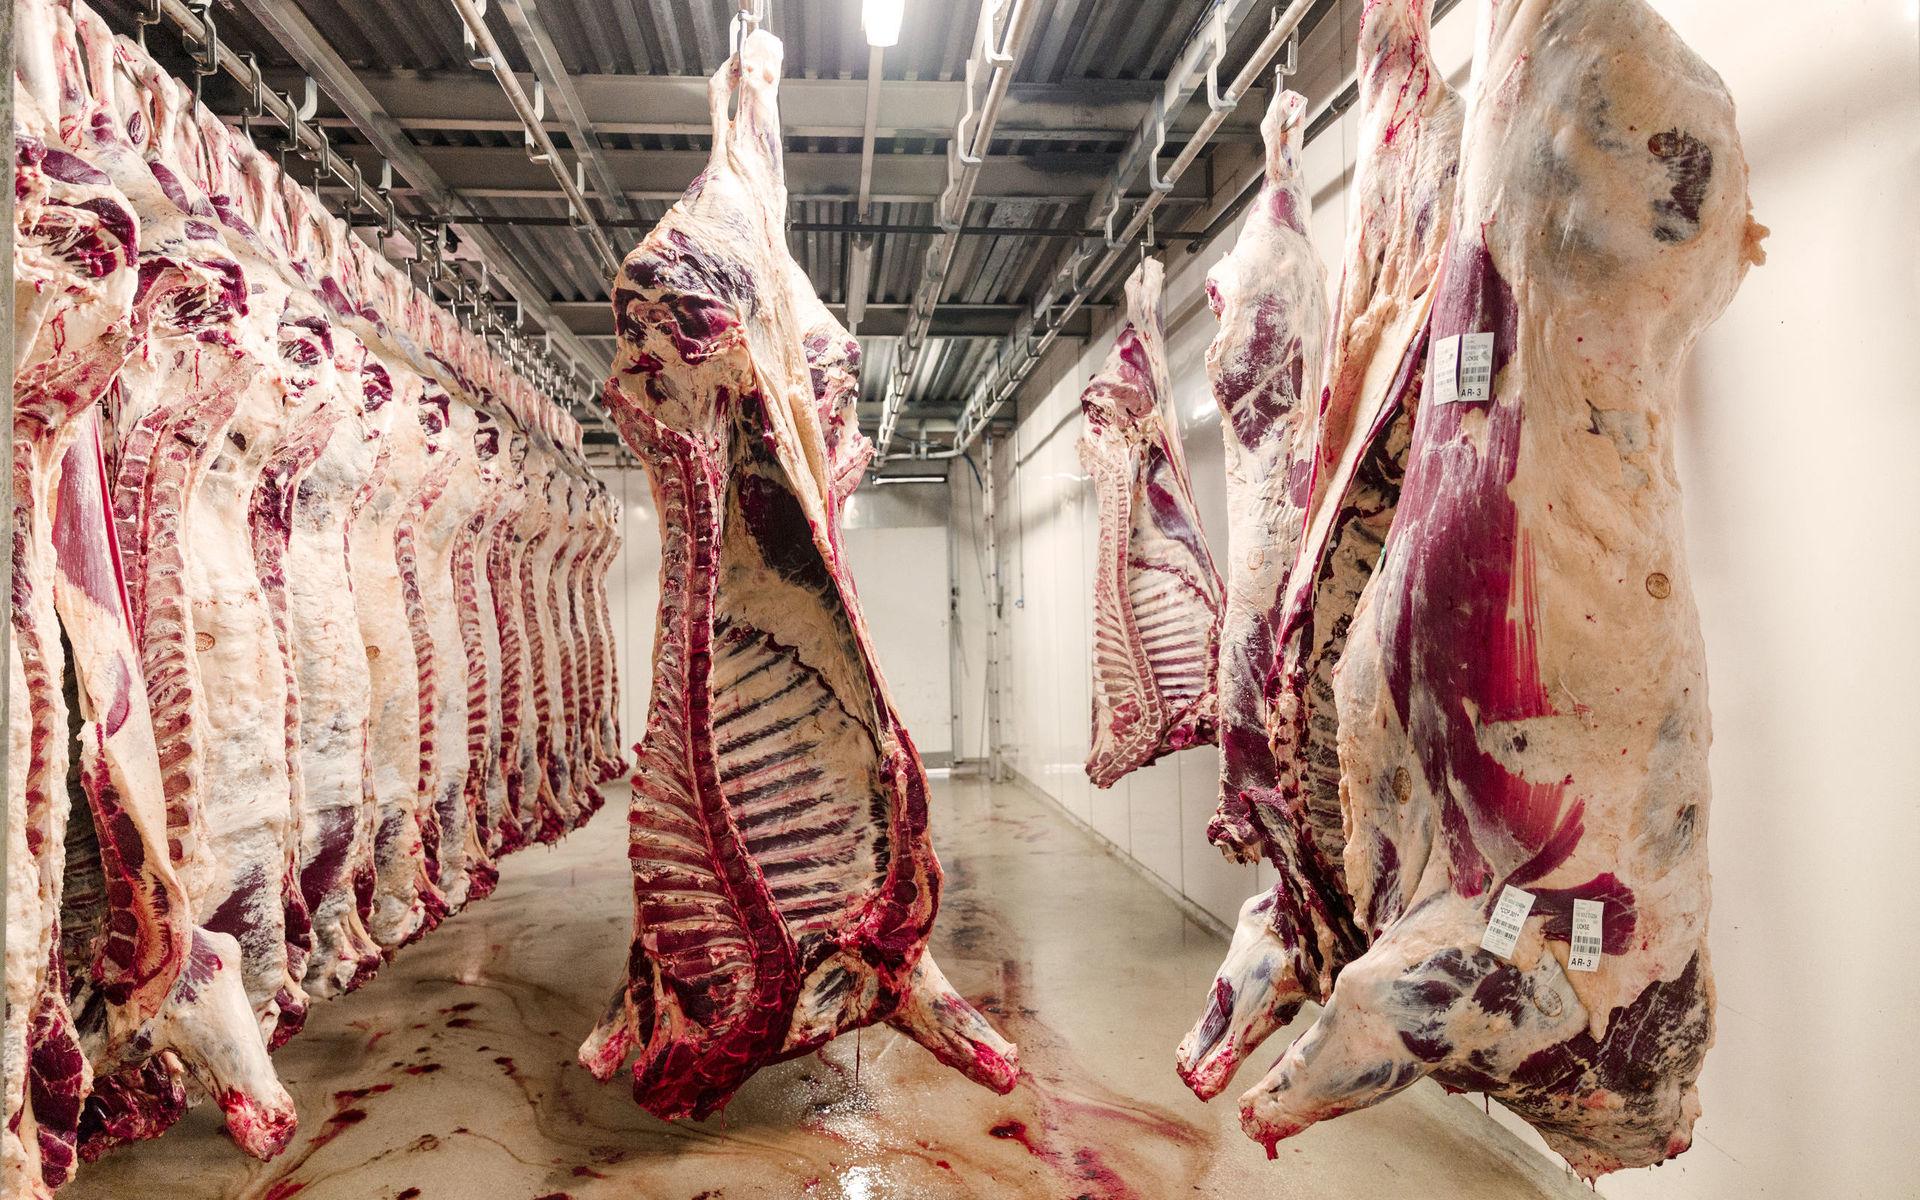 Köttindustrin fungerar som en reservoar för smitta och som en genetisk brygga mellan vilda djur och människor.